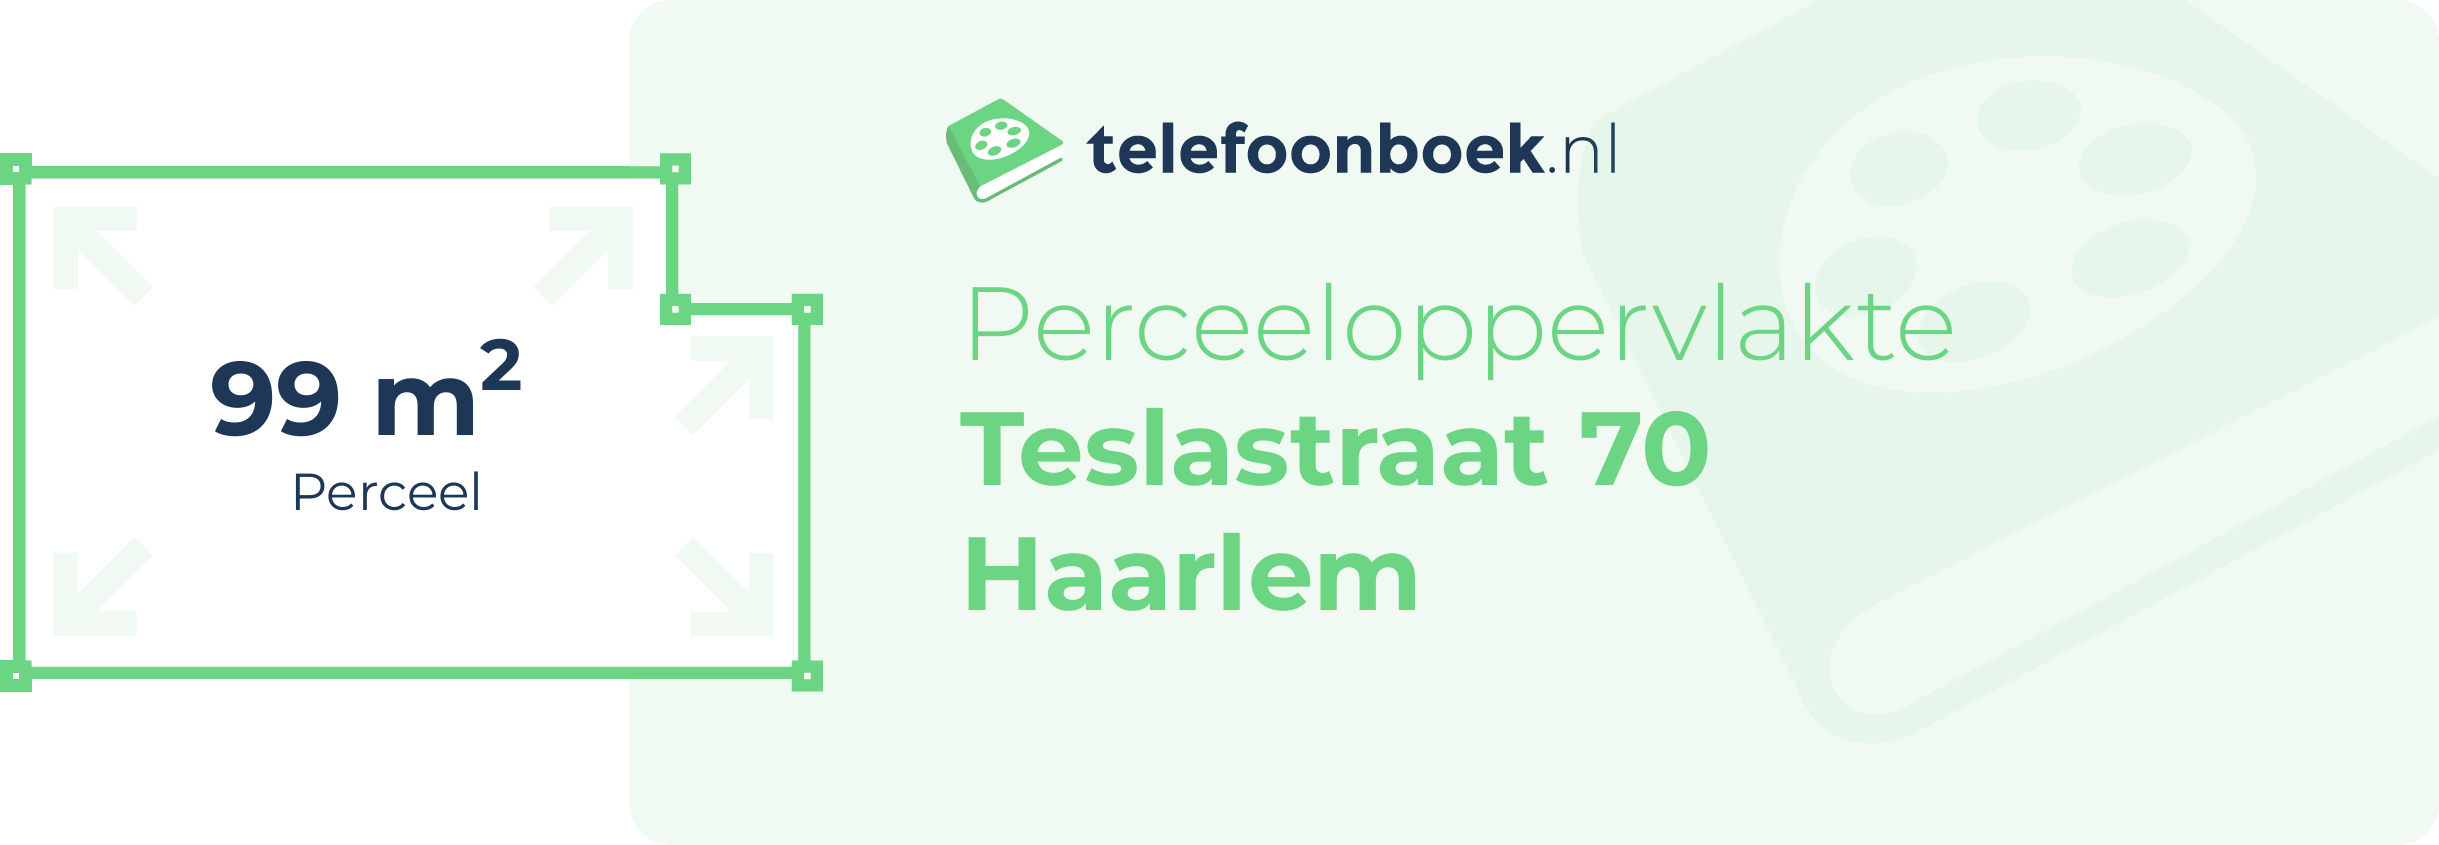 Perceeloppervlakte Teslastraat 70 Haarlem